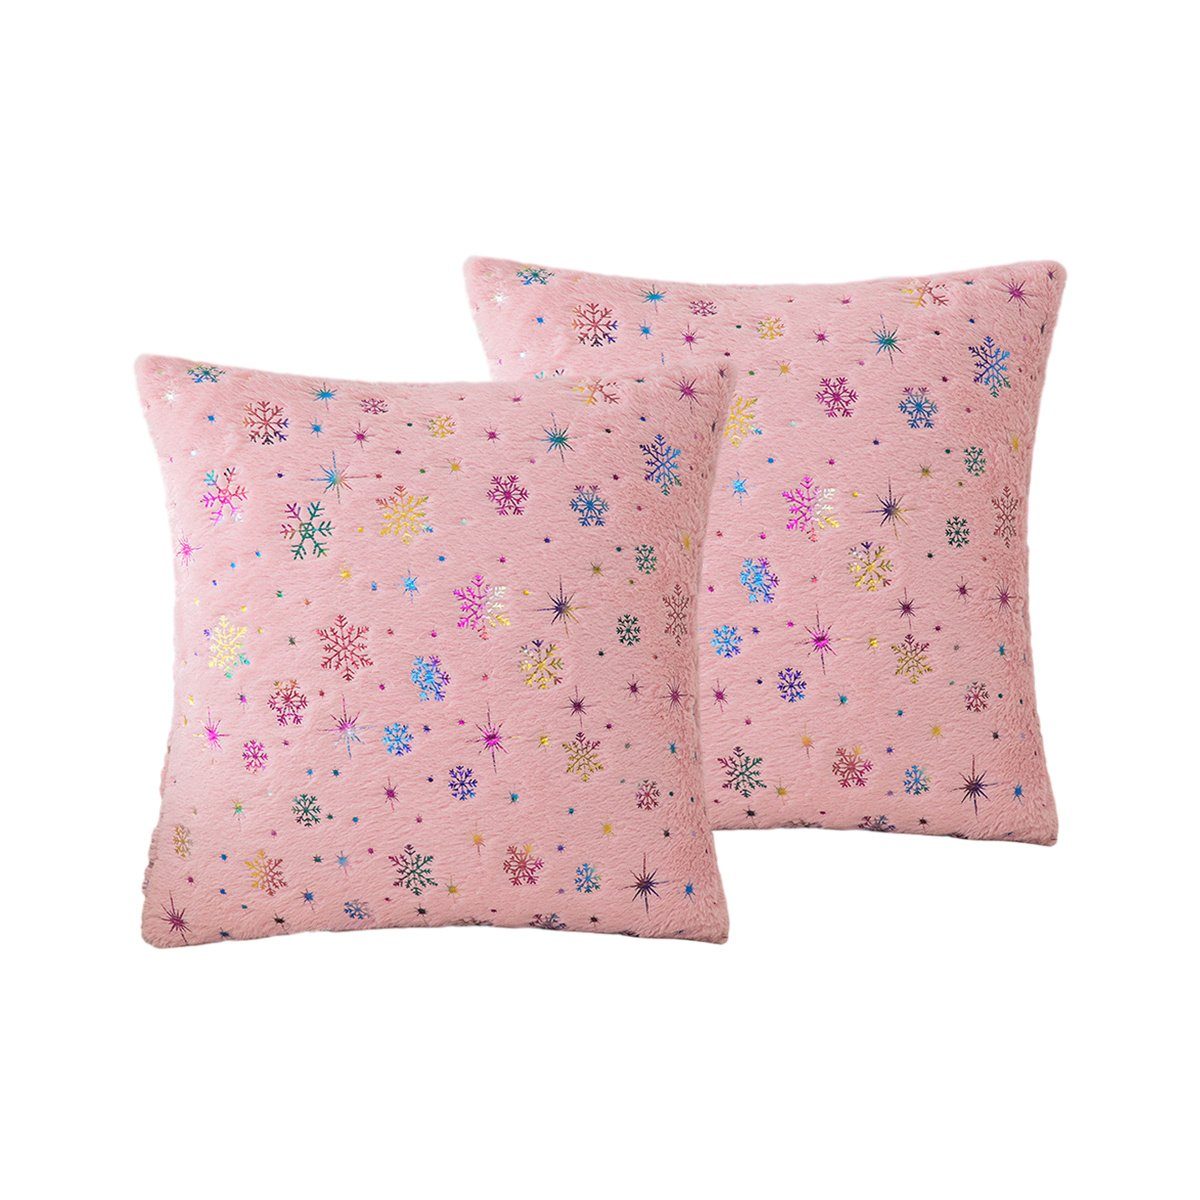 Bett,Couch, Jormftte Kissenbezüge Dekorativer Schneeflocken-Pailletten,für Rosa Kissenbezug,mit